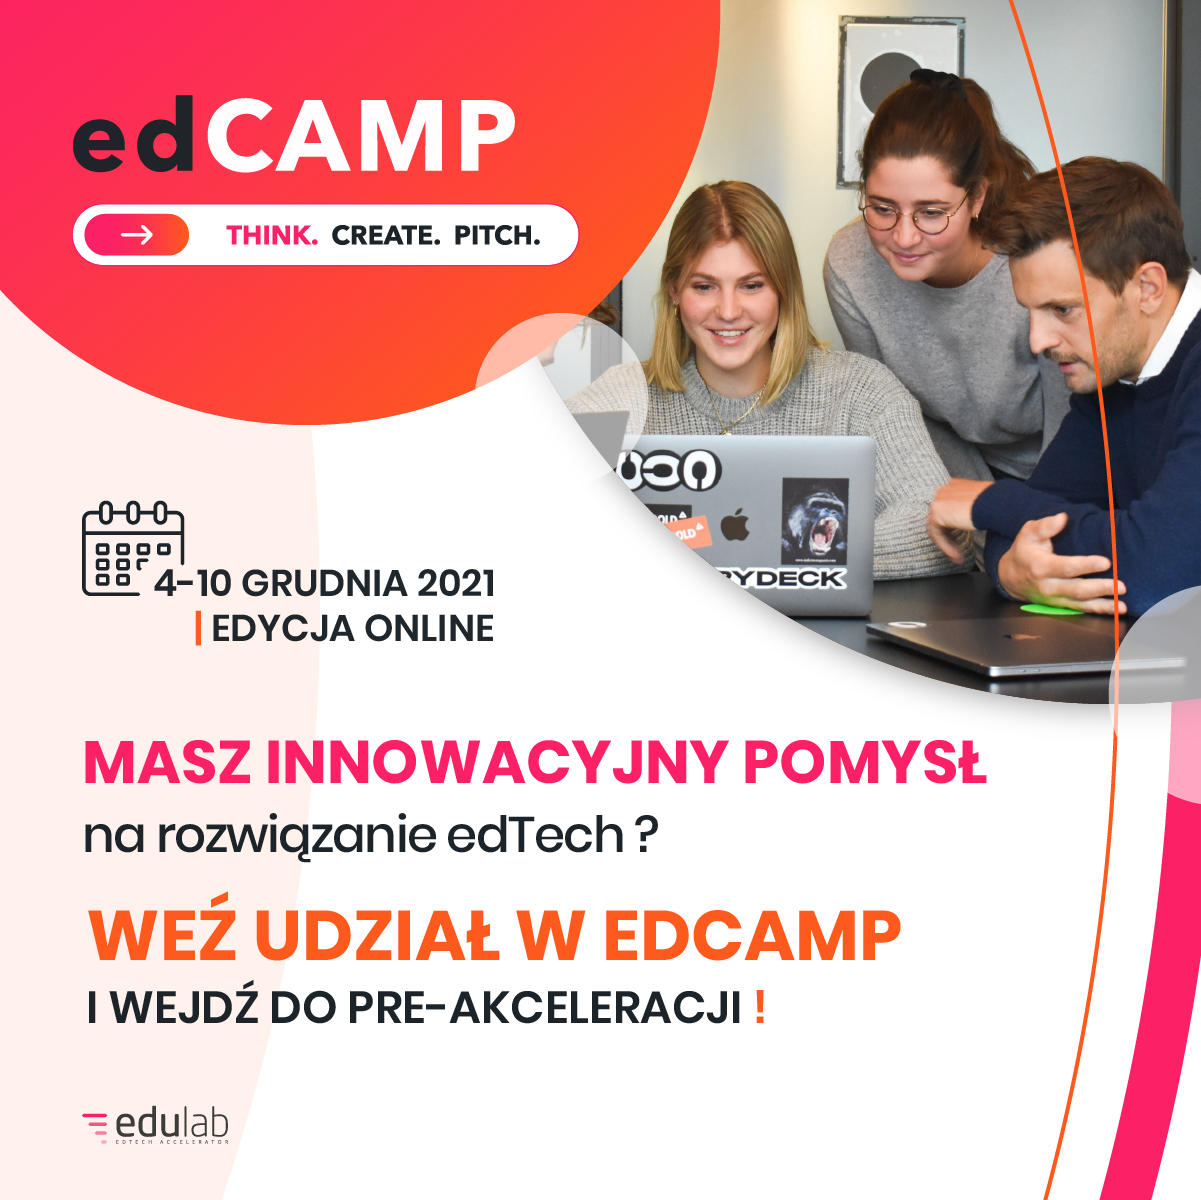 edCAMP dla startupów edTech już 4-10 grudnia! 